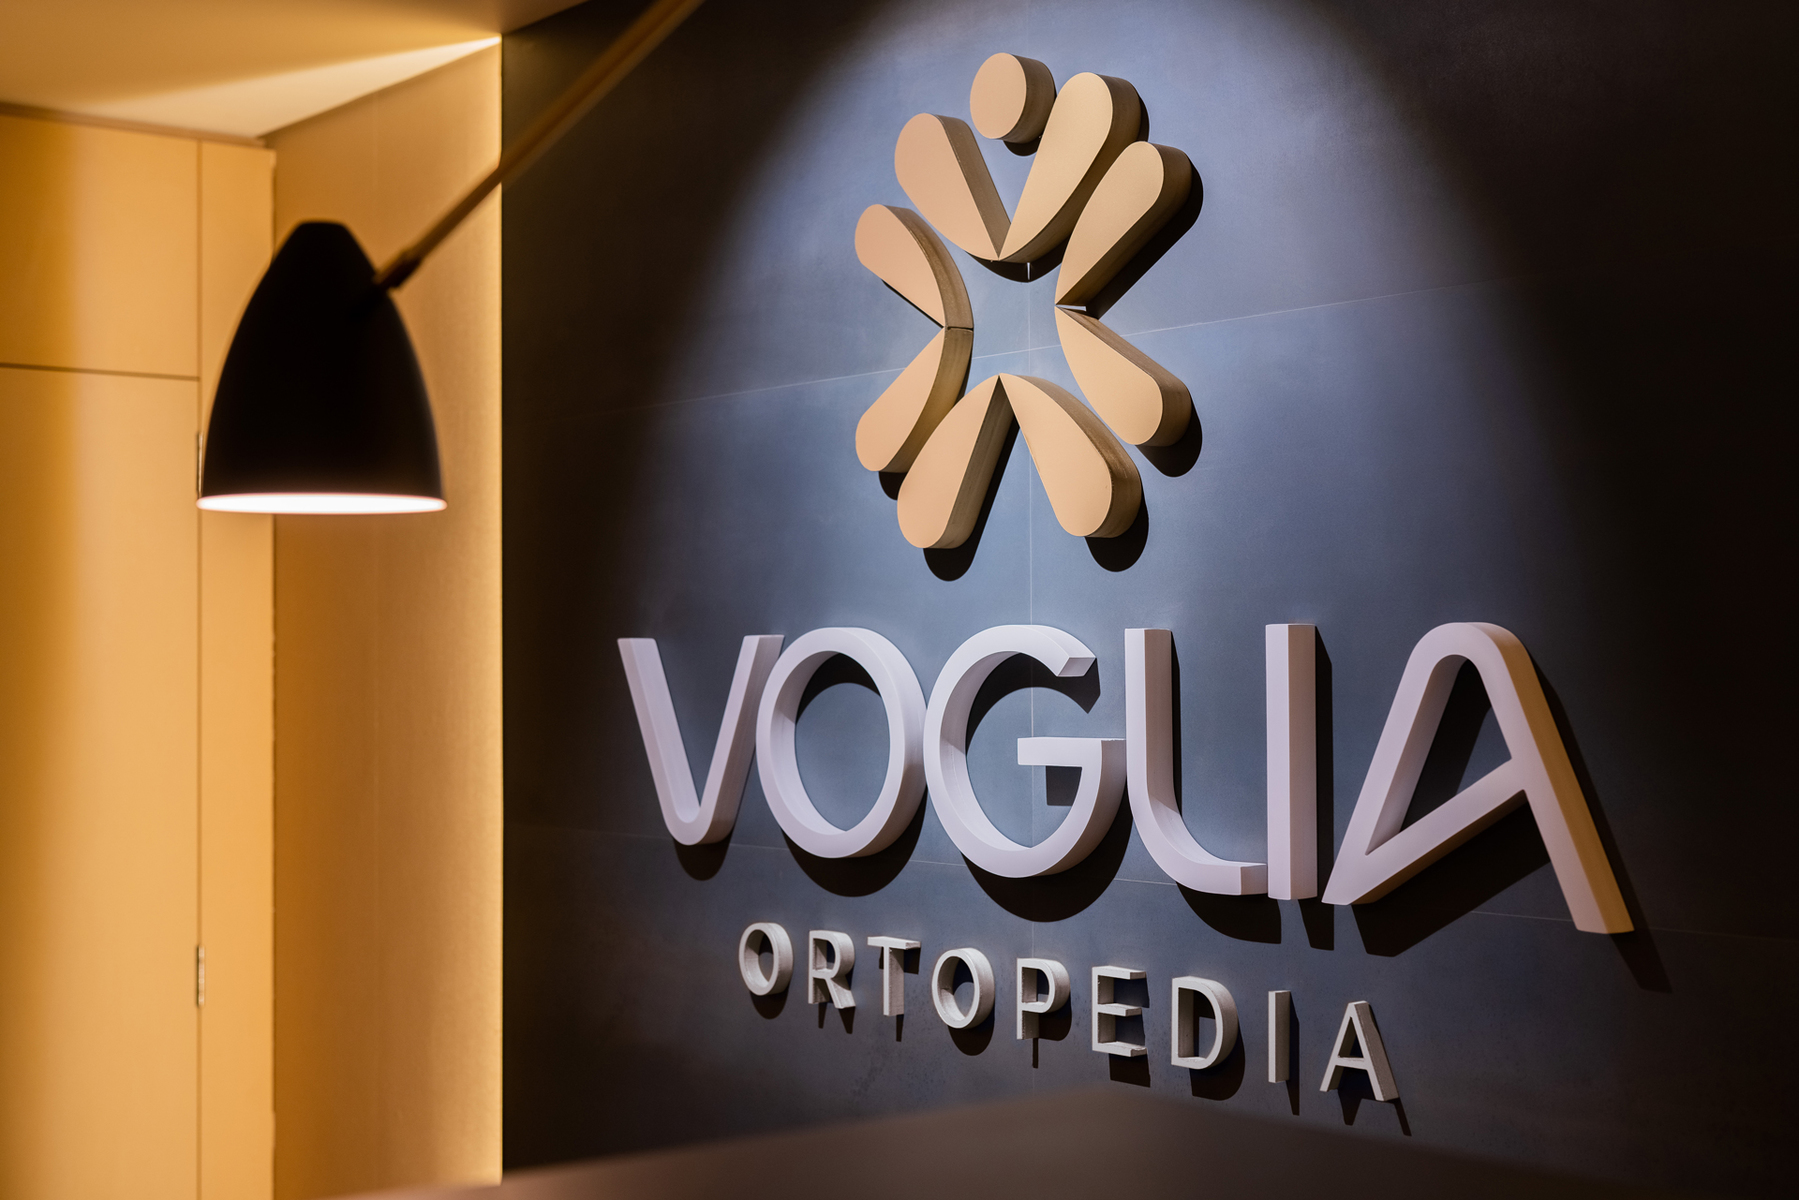 Voglia Orthopedics Visual Identity